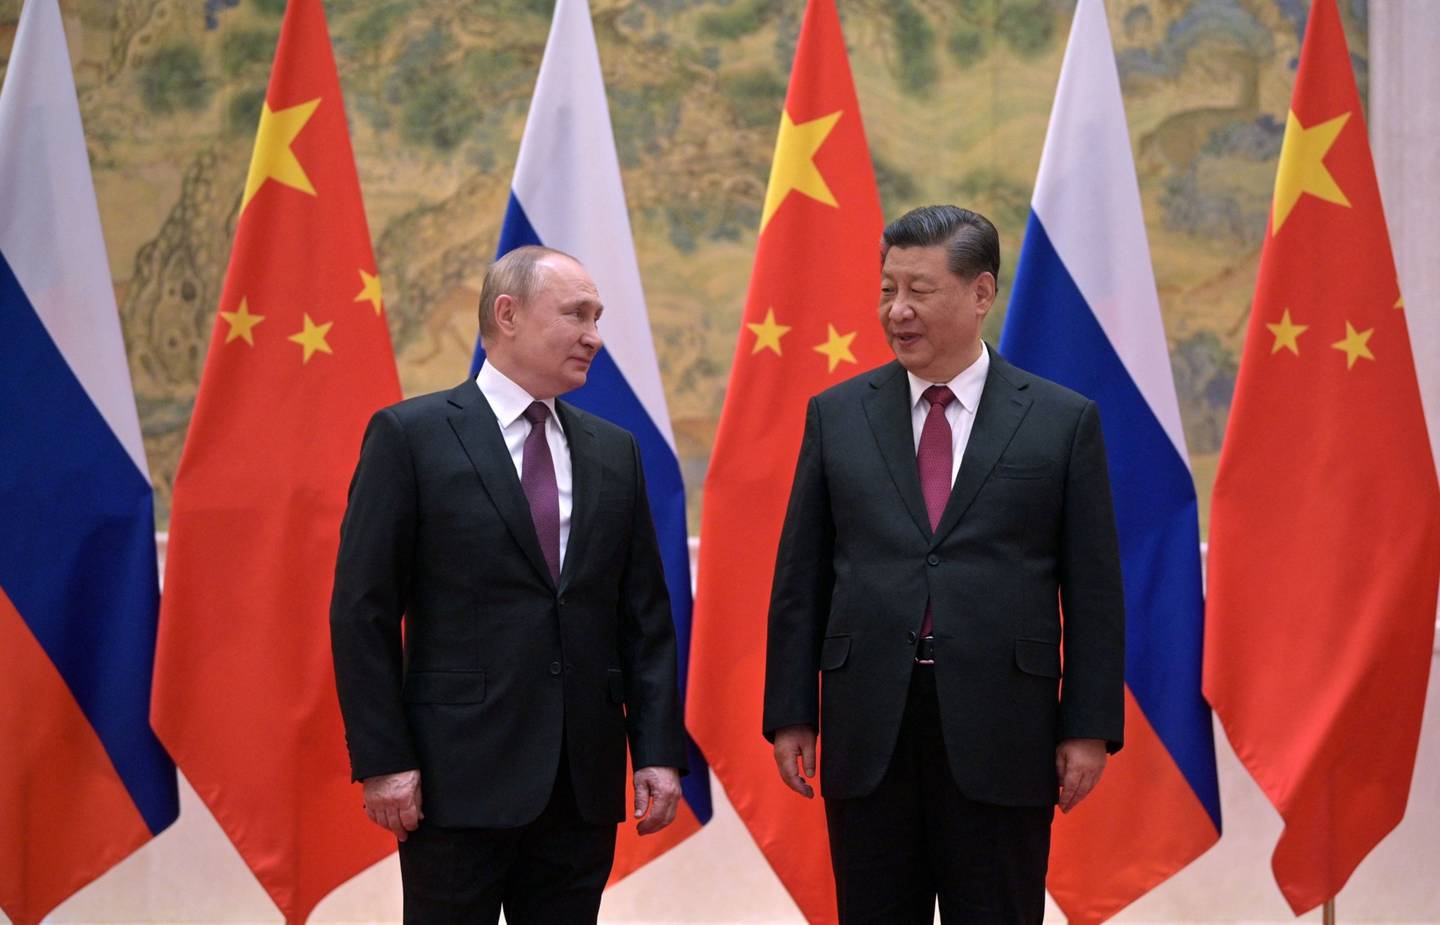 El presidente ruso Vladimir Putin (I) y el presidente chino Xi Jinping posan durante su reunión en Pekín, el 4 de febrero de 2022. Fotógrafo: Alexei Druzhinin/Sputnik/AFP/Getty Images